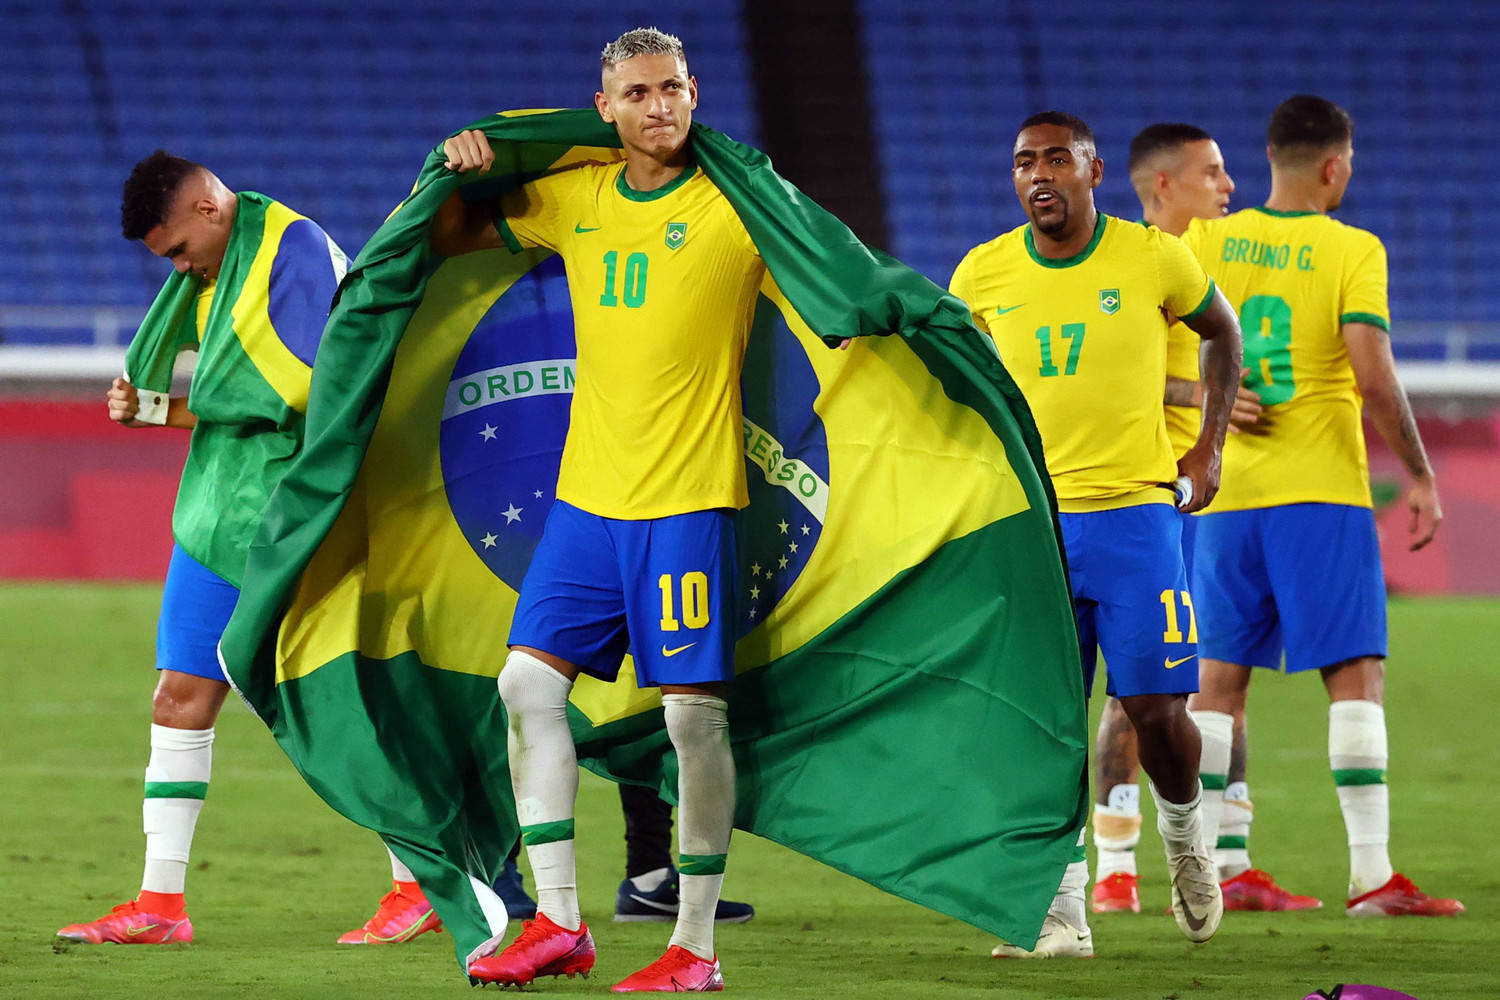 Os maiores artilheiros da seleção brasileira masculina de futebol